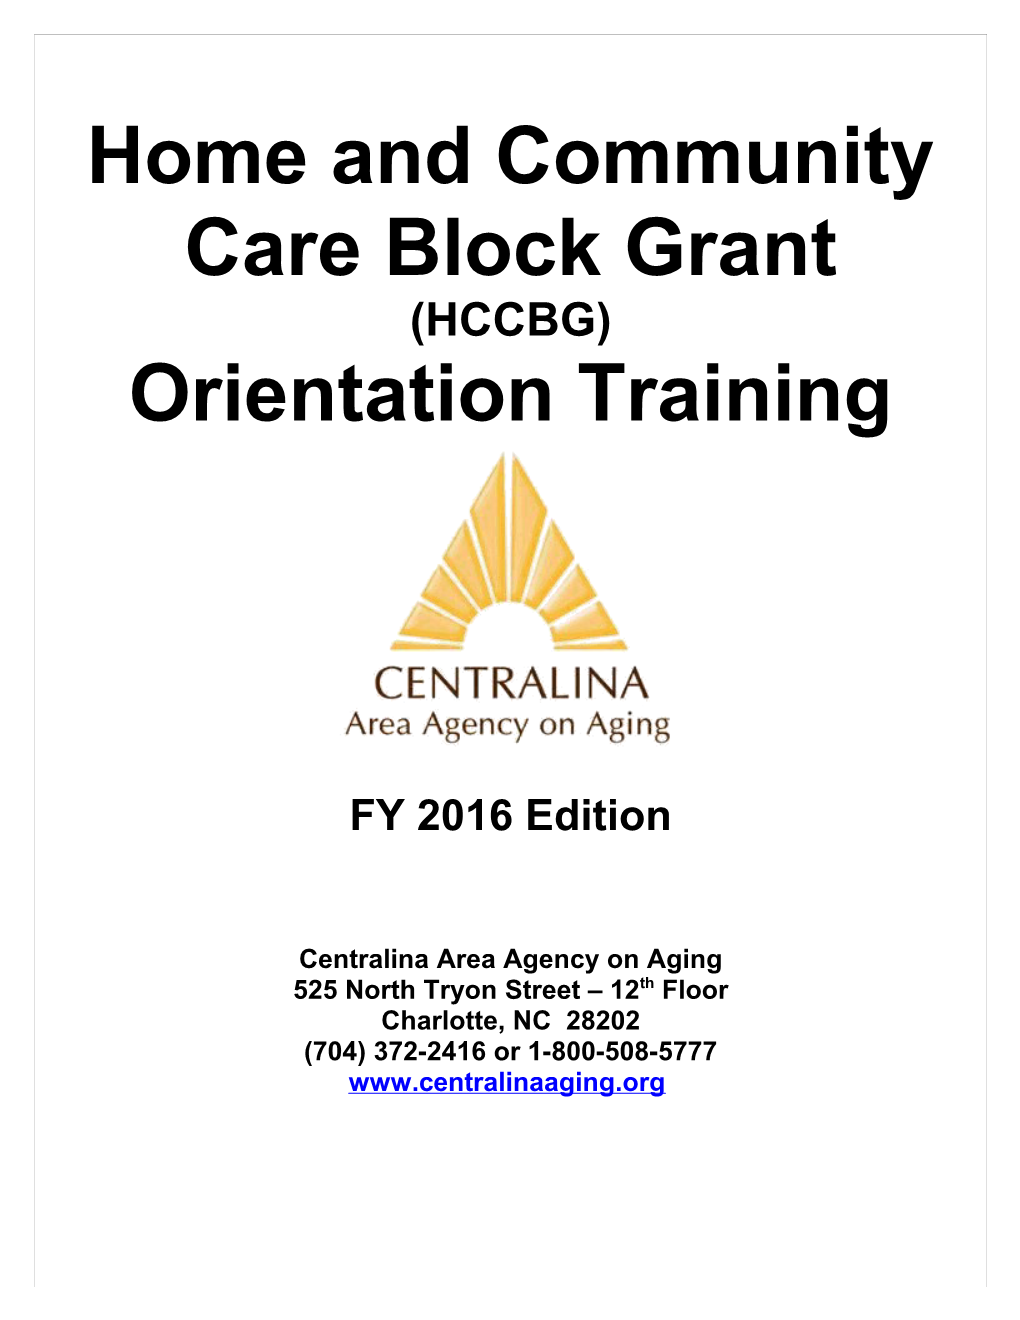 Home and Community Care Block Grant (HCCBG)